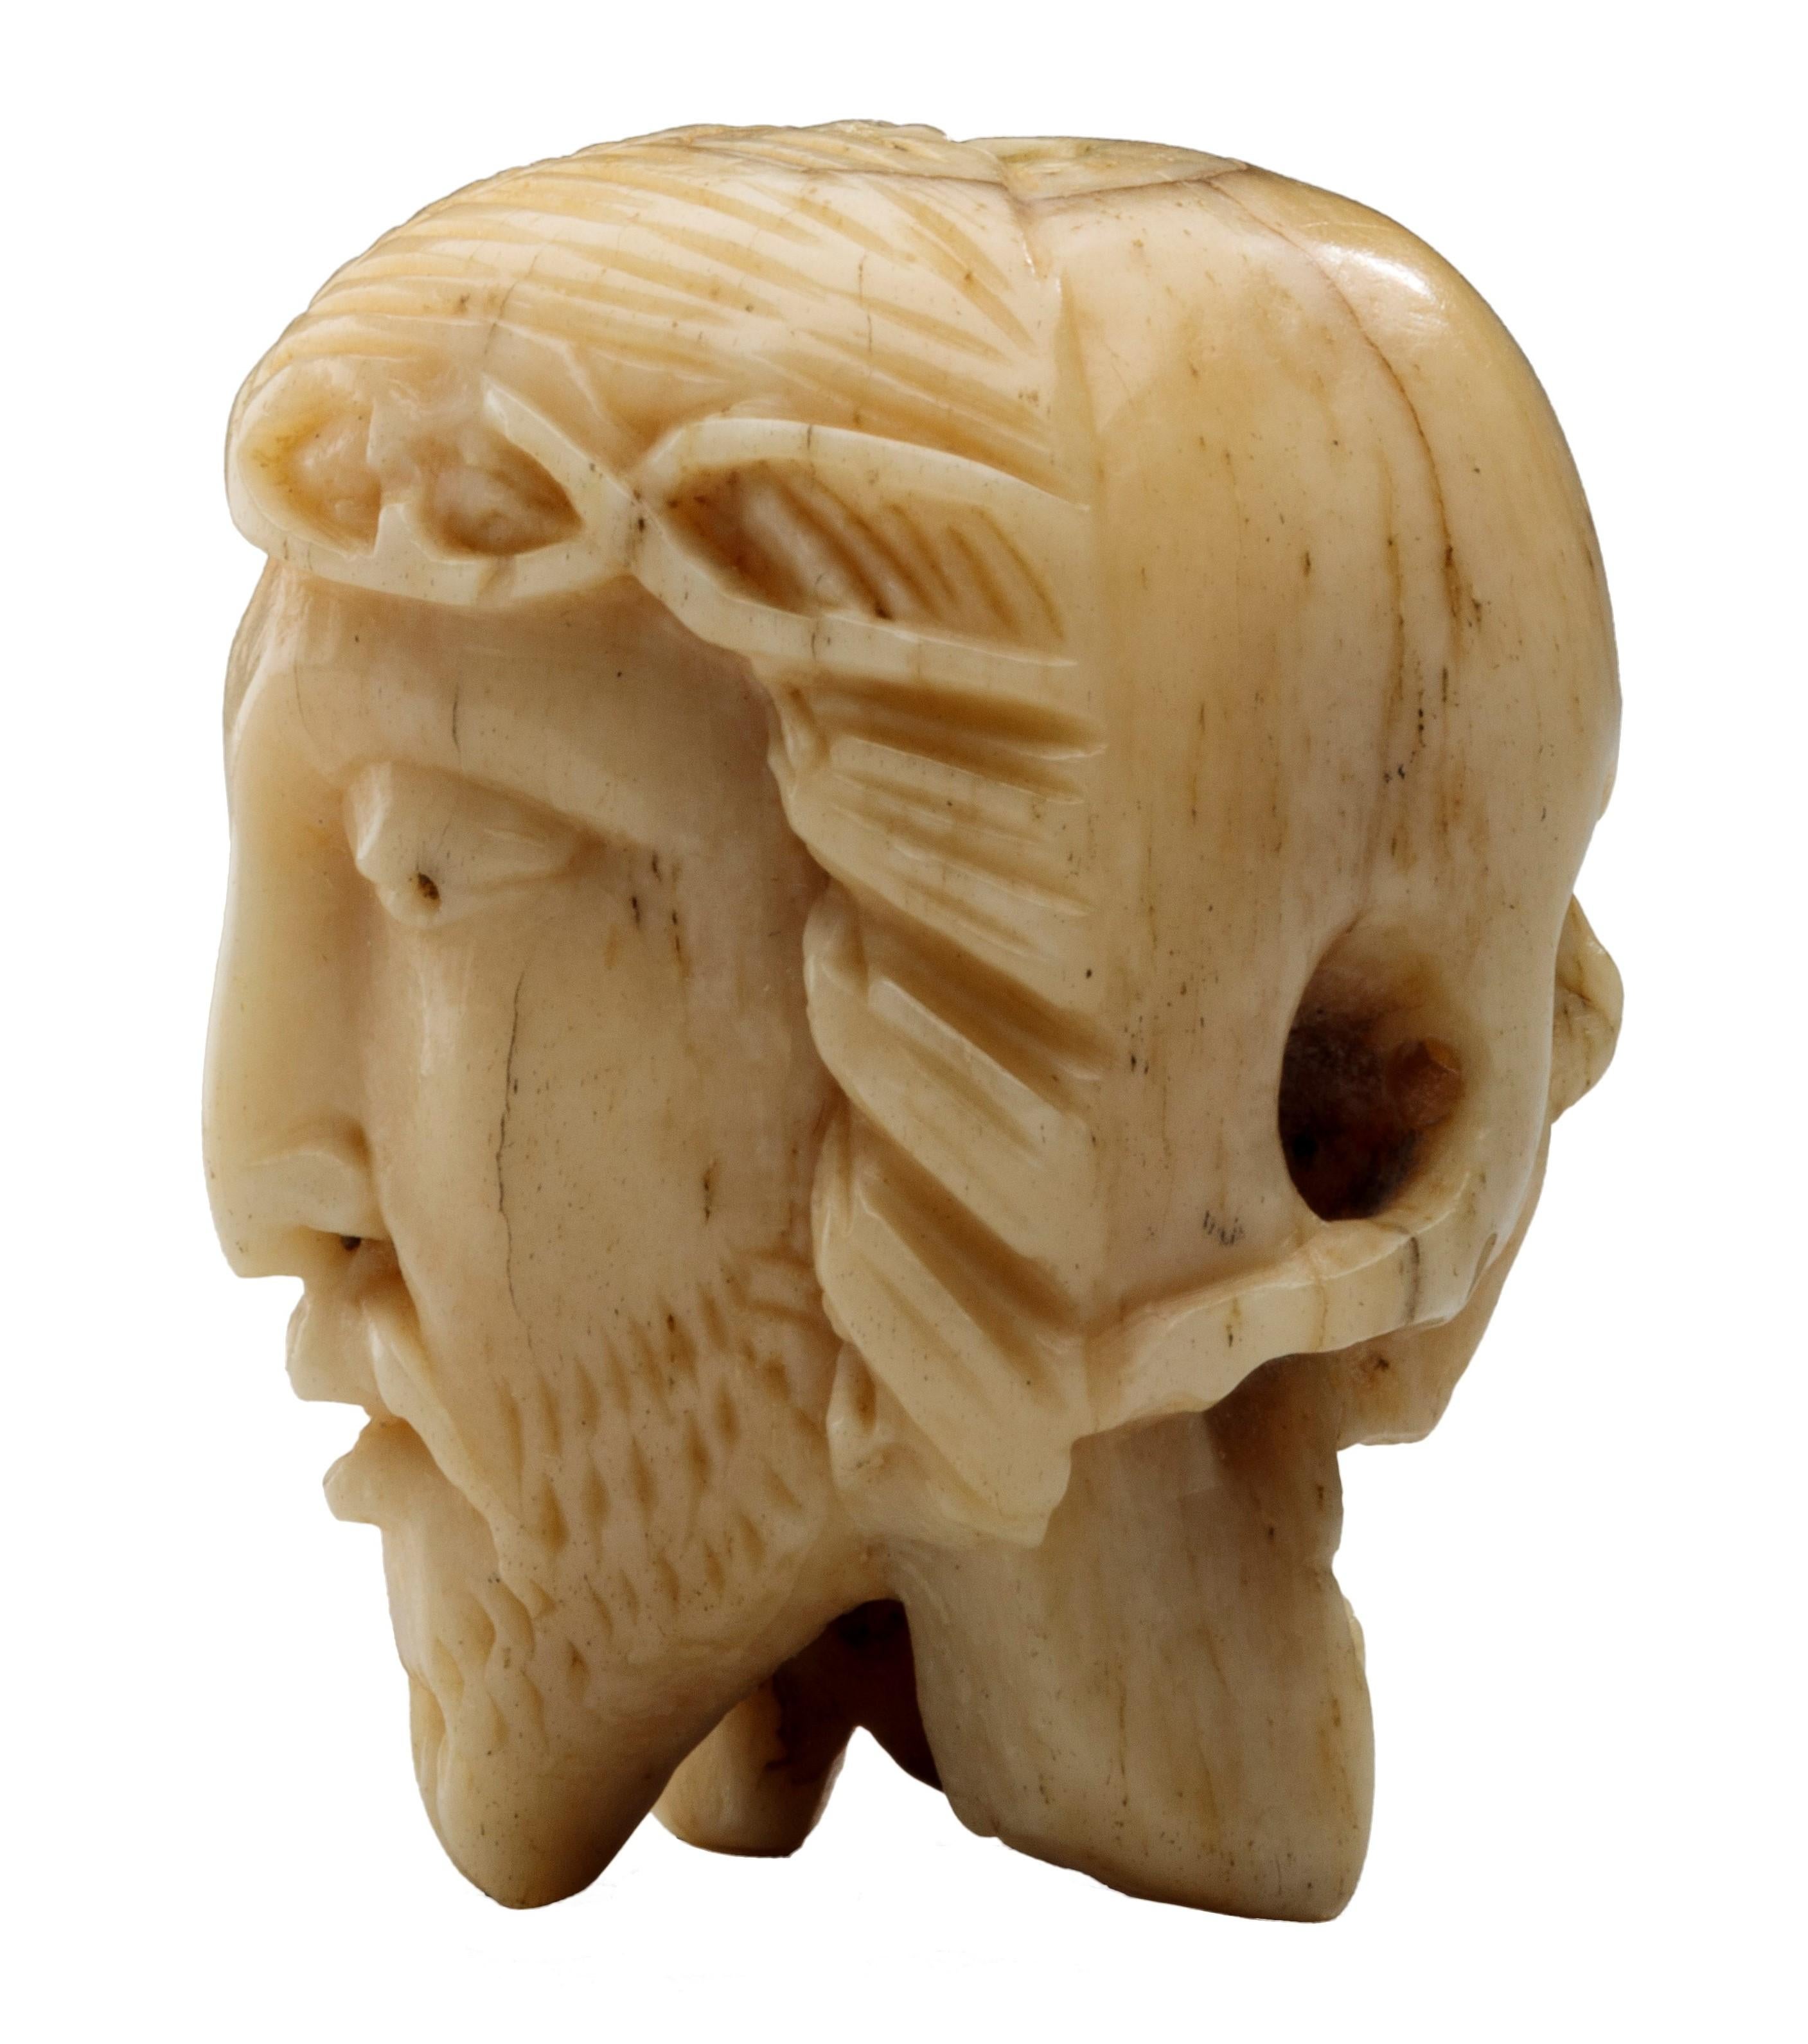 CHAPELET AVEC WENDEKOPF
Allemagne, XVIe siècle
Os
Poids 12 grammes ; dimensions 29 × 23 × 24 cm

Perle à double face en os avec une tête de Christ finement sculptée d'un côté et un crâne de l'autre et avec un trou vertical pour l'enfiler sur un